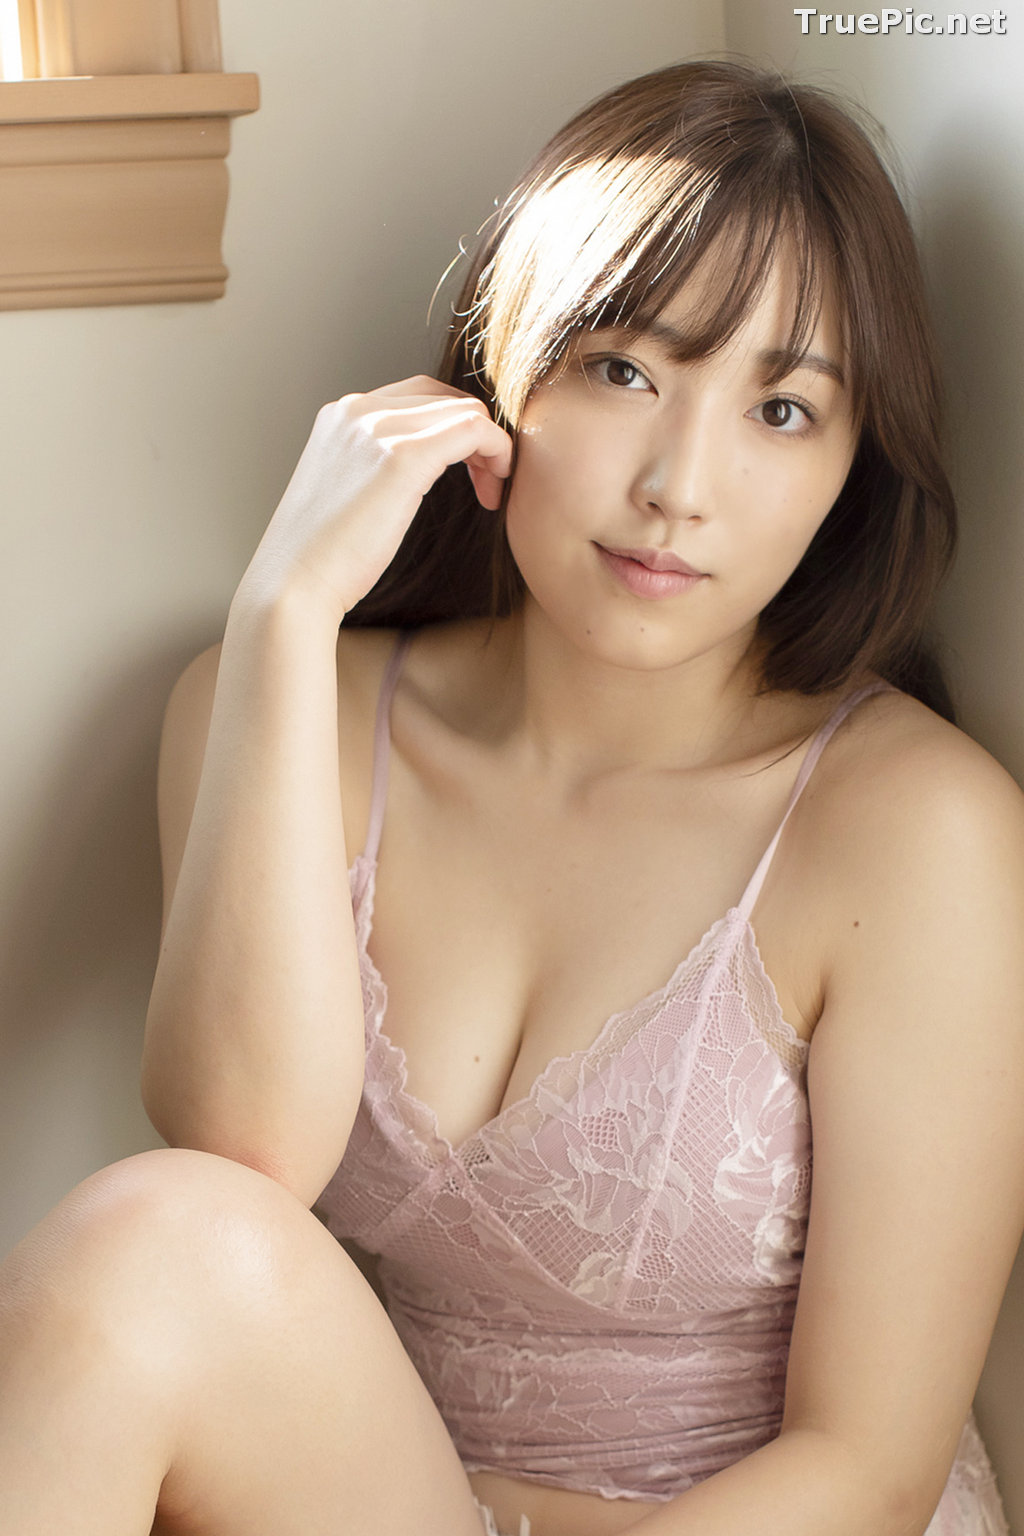 Image Japanese Model - Mizuki Fukumura (譜久村聖) - TruePic.net (101 pictures) - Picture-33